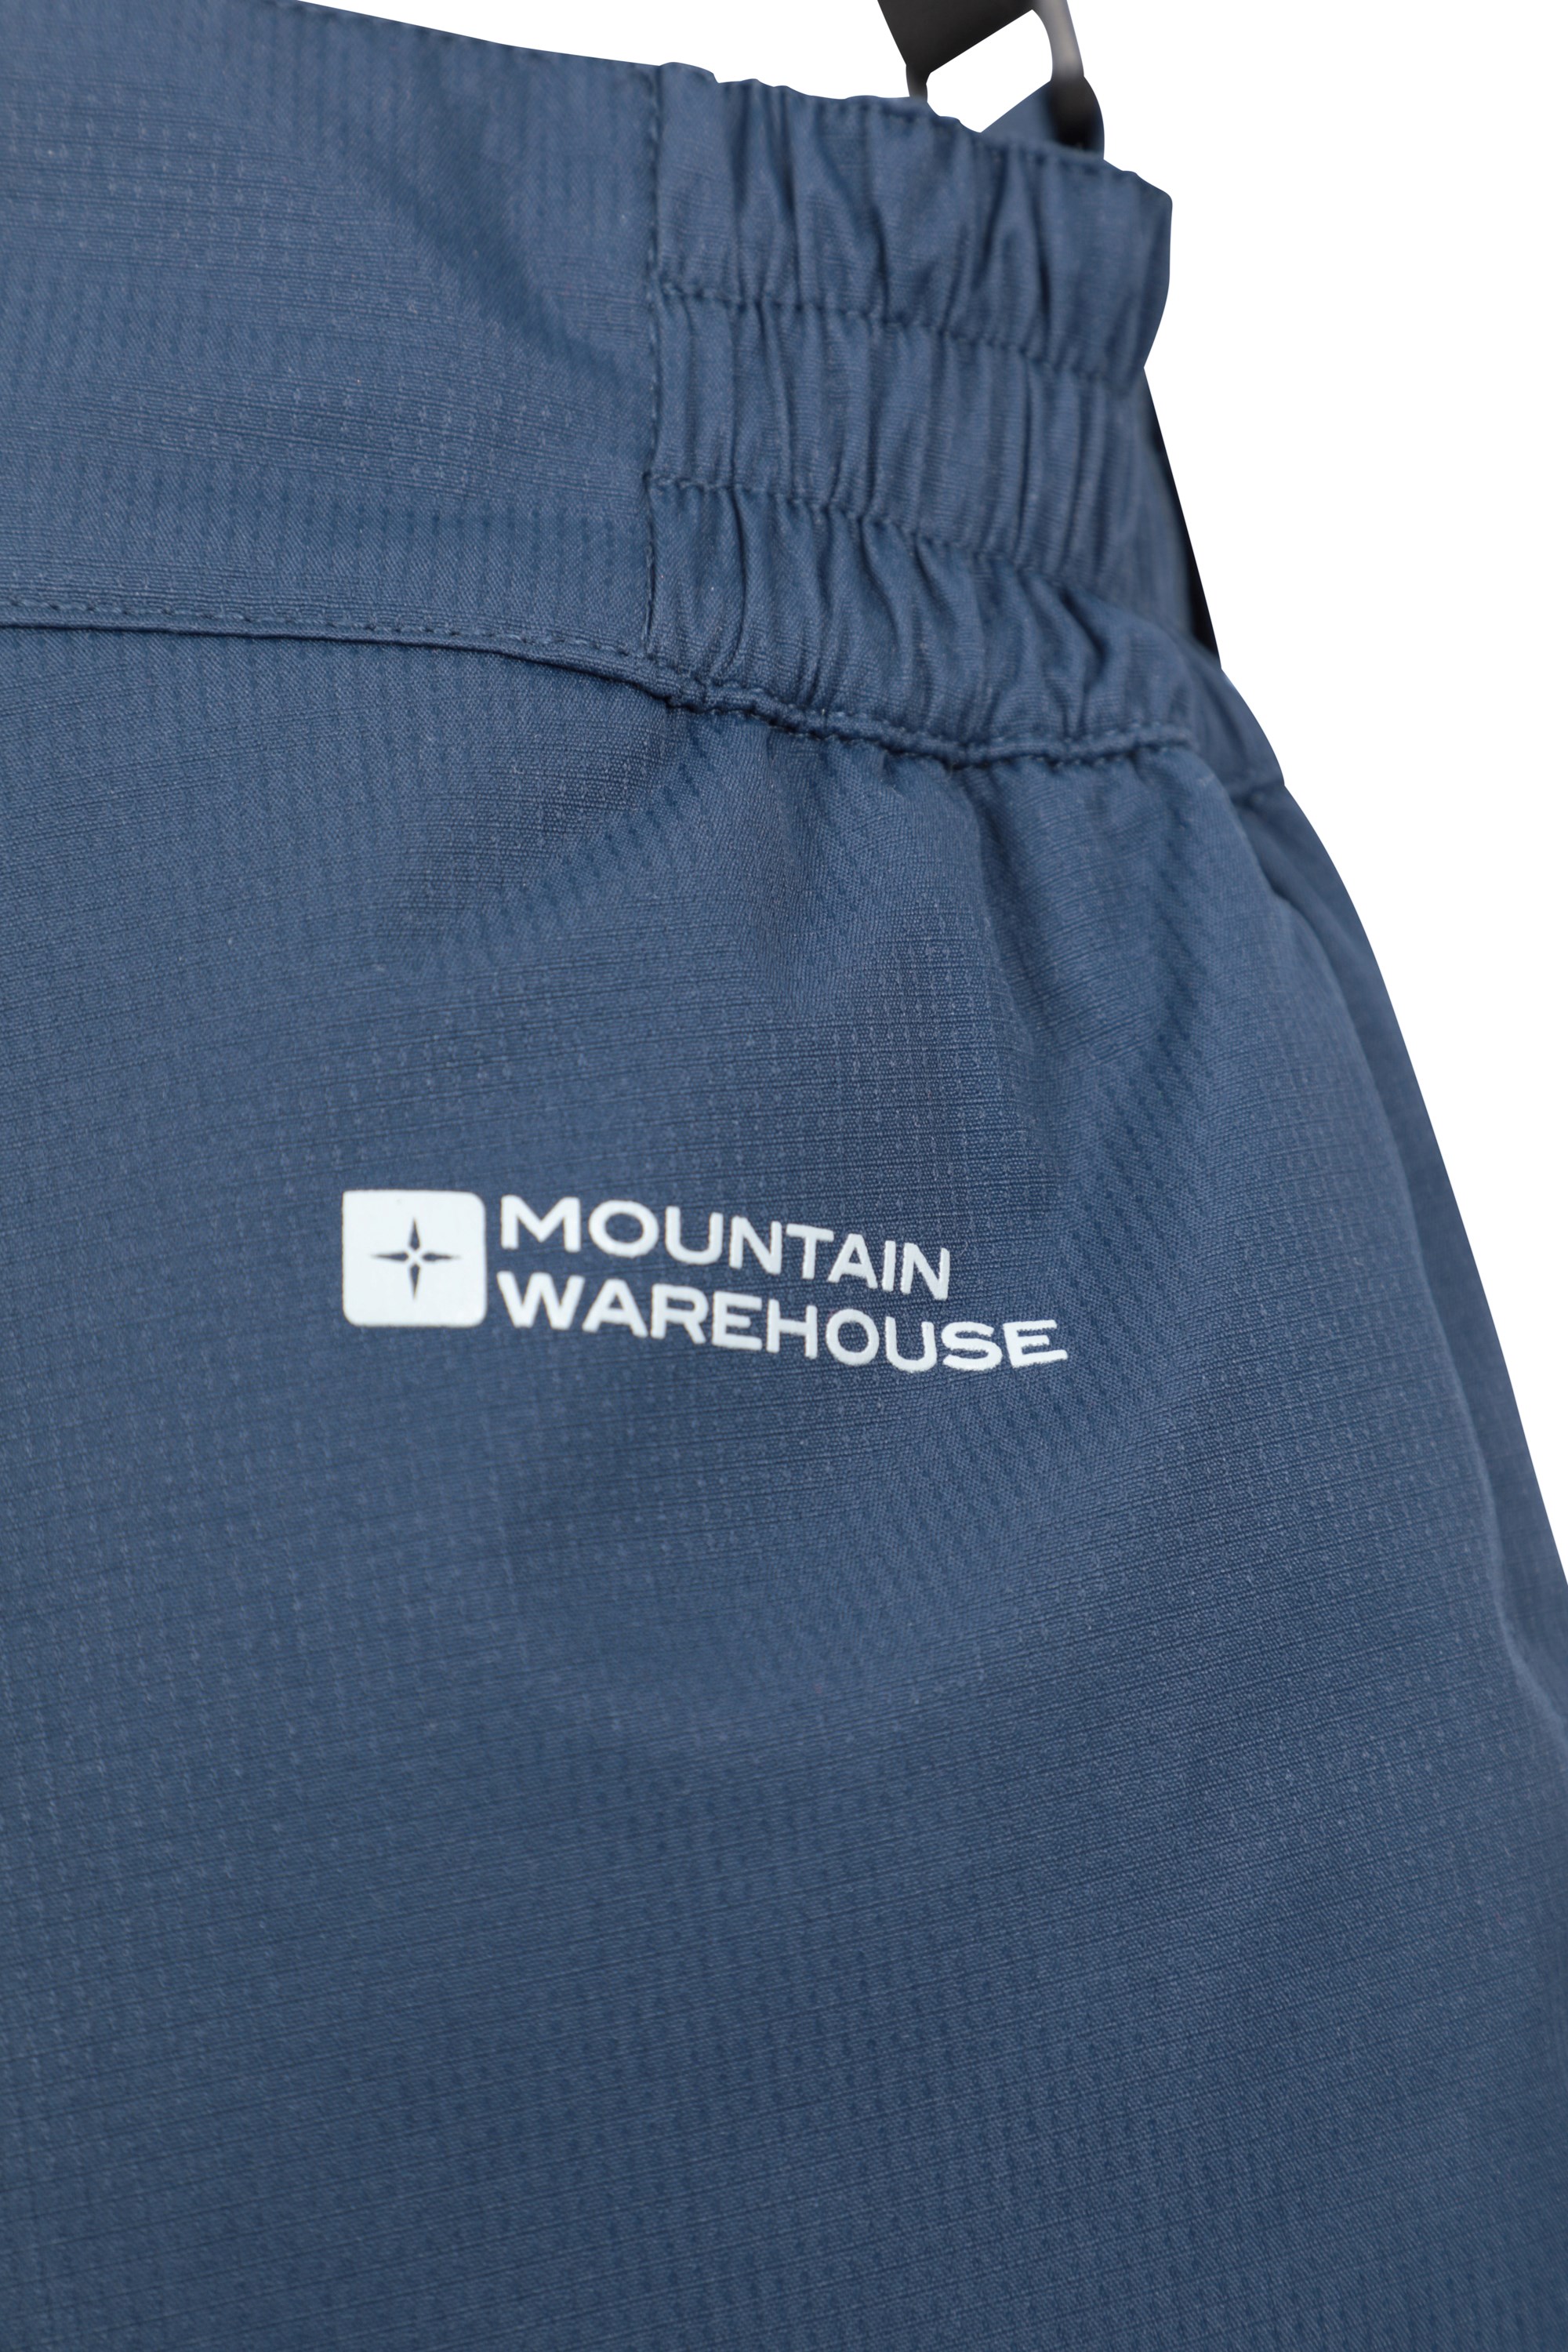 Mountain Warehouse Falcon Extreme Kids Ski Pants